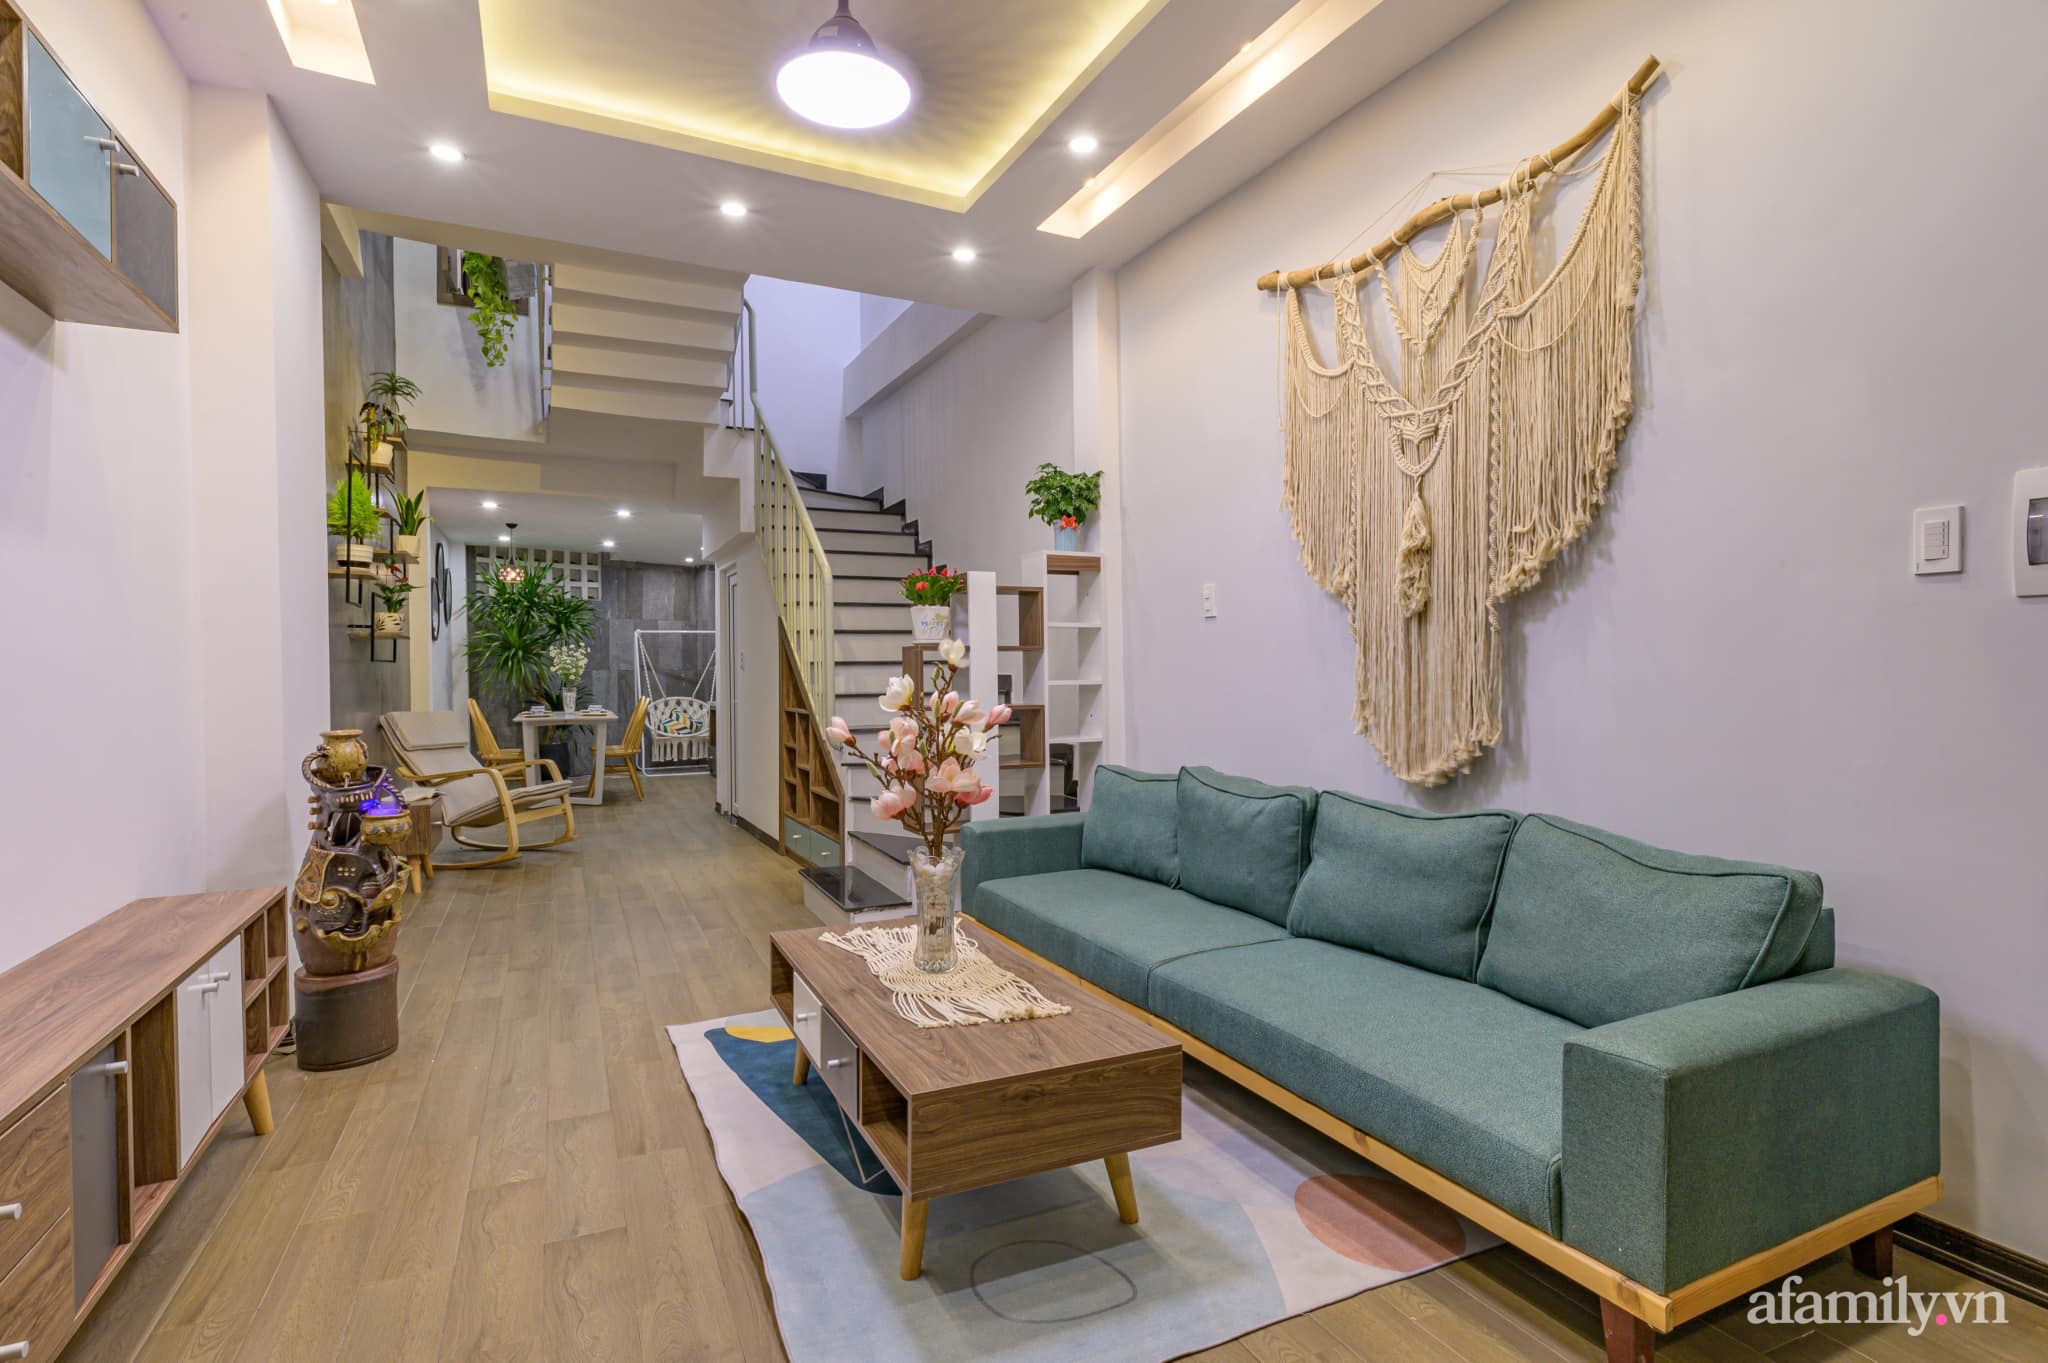  Không gian phòng khách với điểm nhấn từ màu xanh sofa. Góc nhỏ thân thiện đầy ấn tượng với nội thất gỗ và đồ trang trí treo tường.